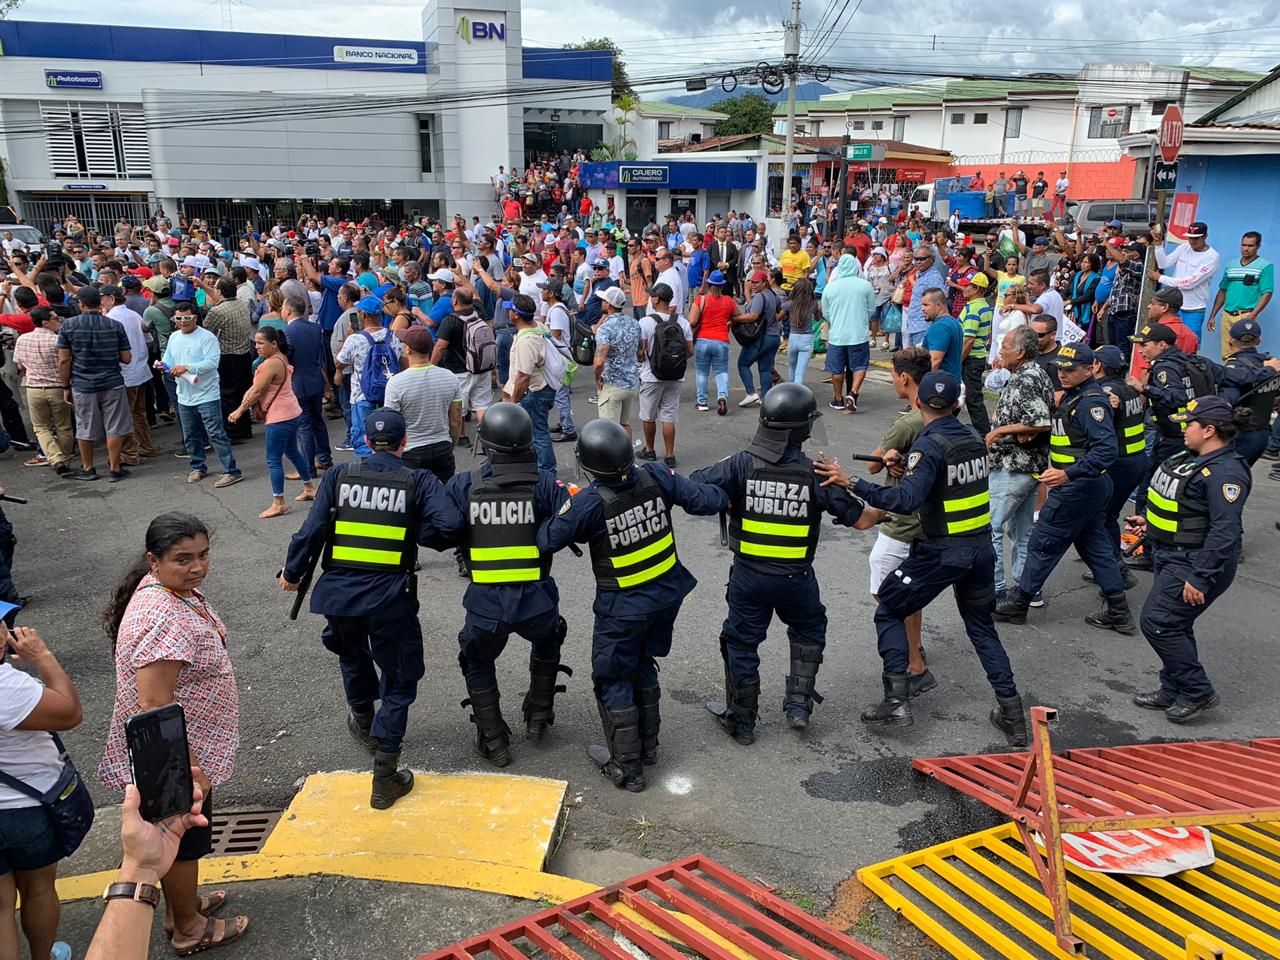 ONU hace llamado a la paz y a la manifestación pacífica en Costa Rica